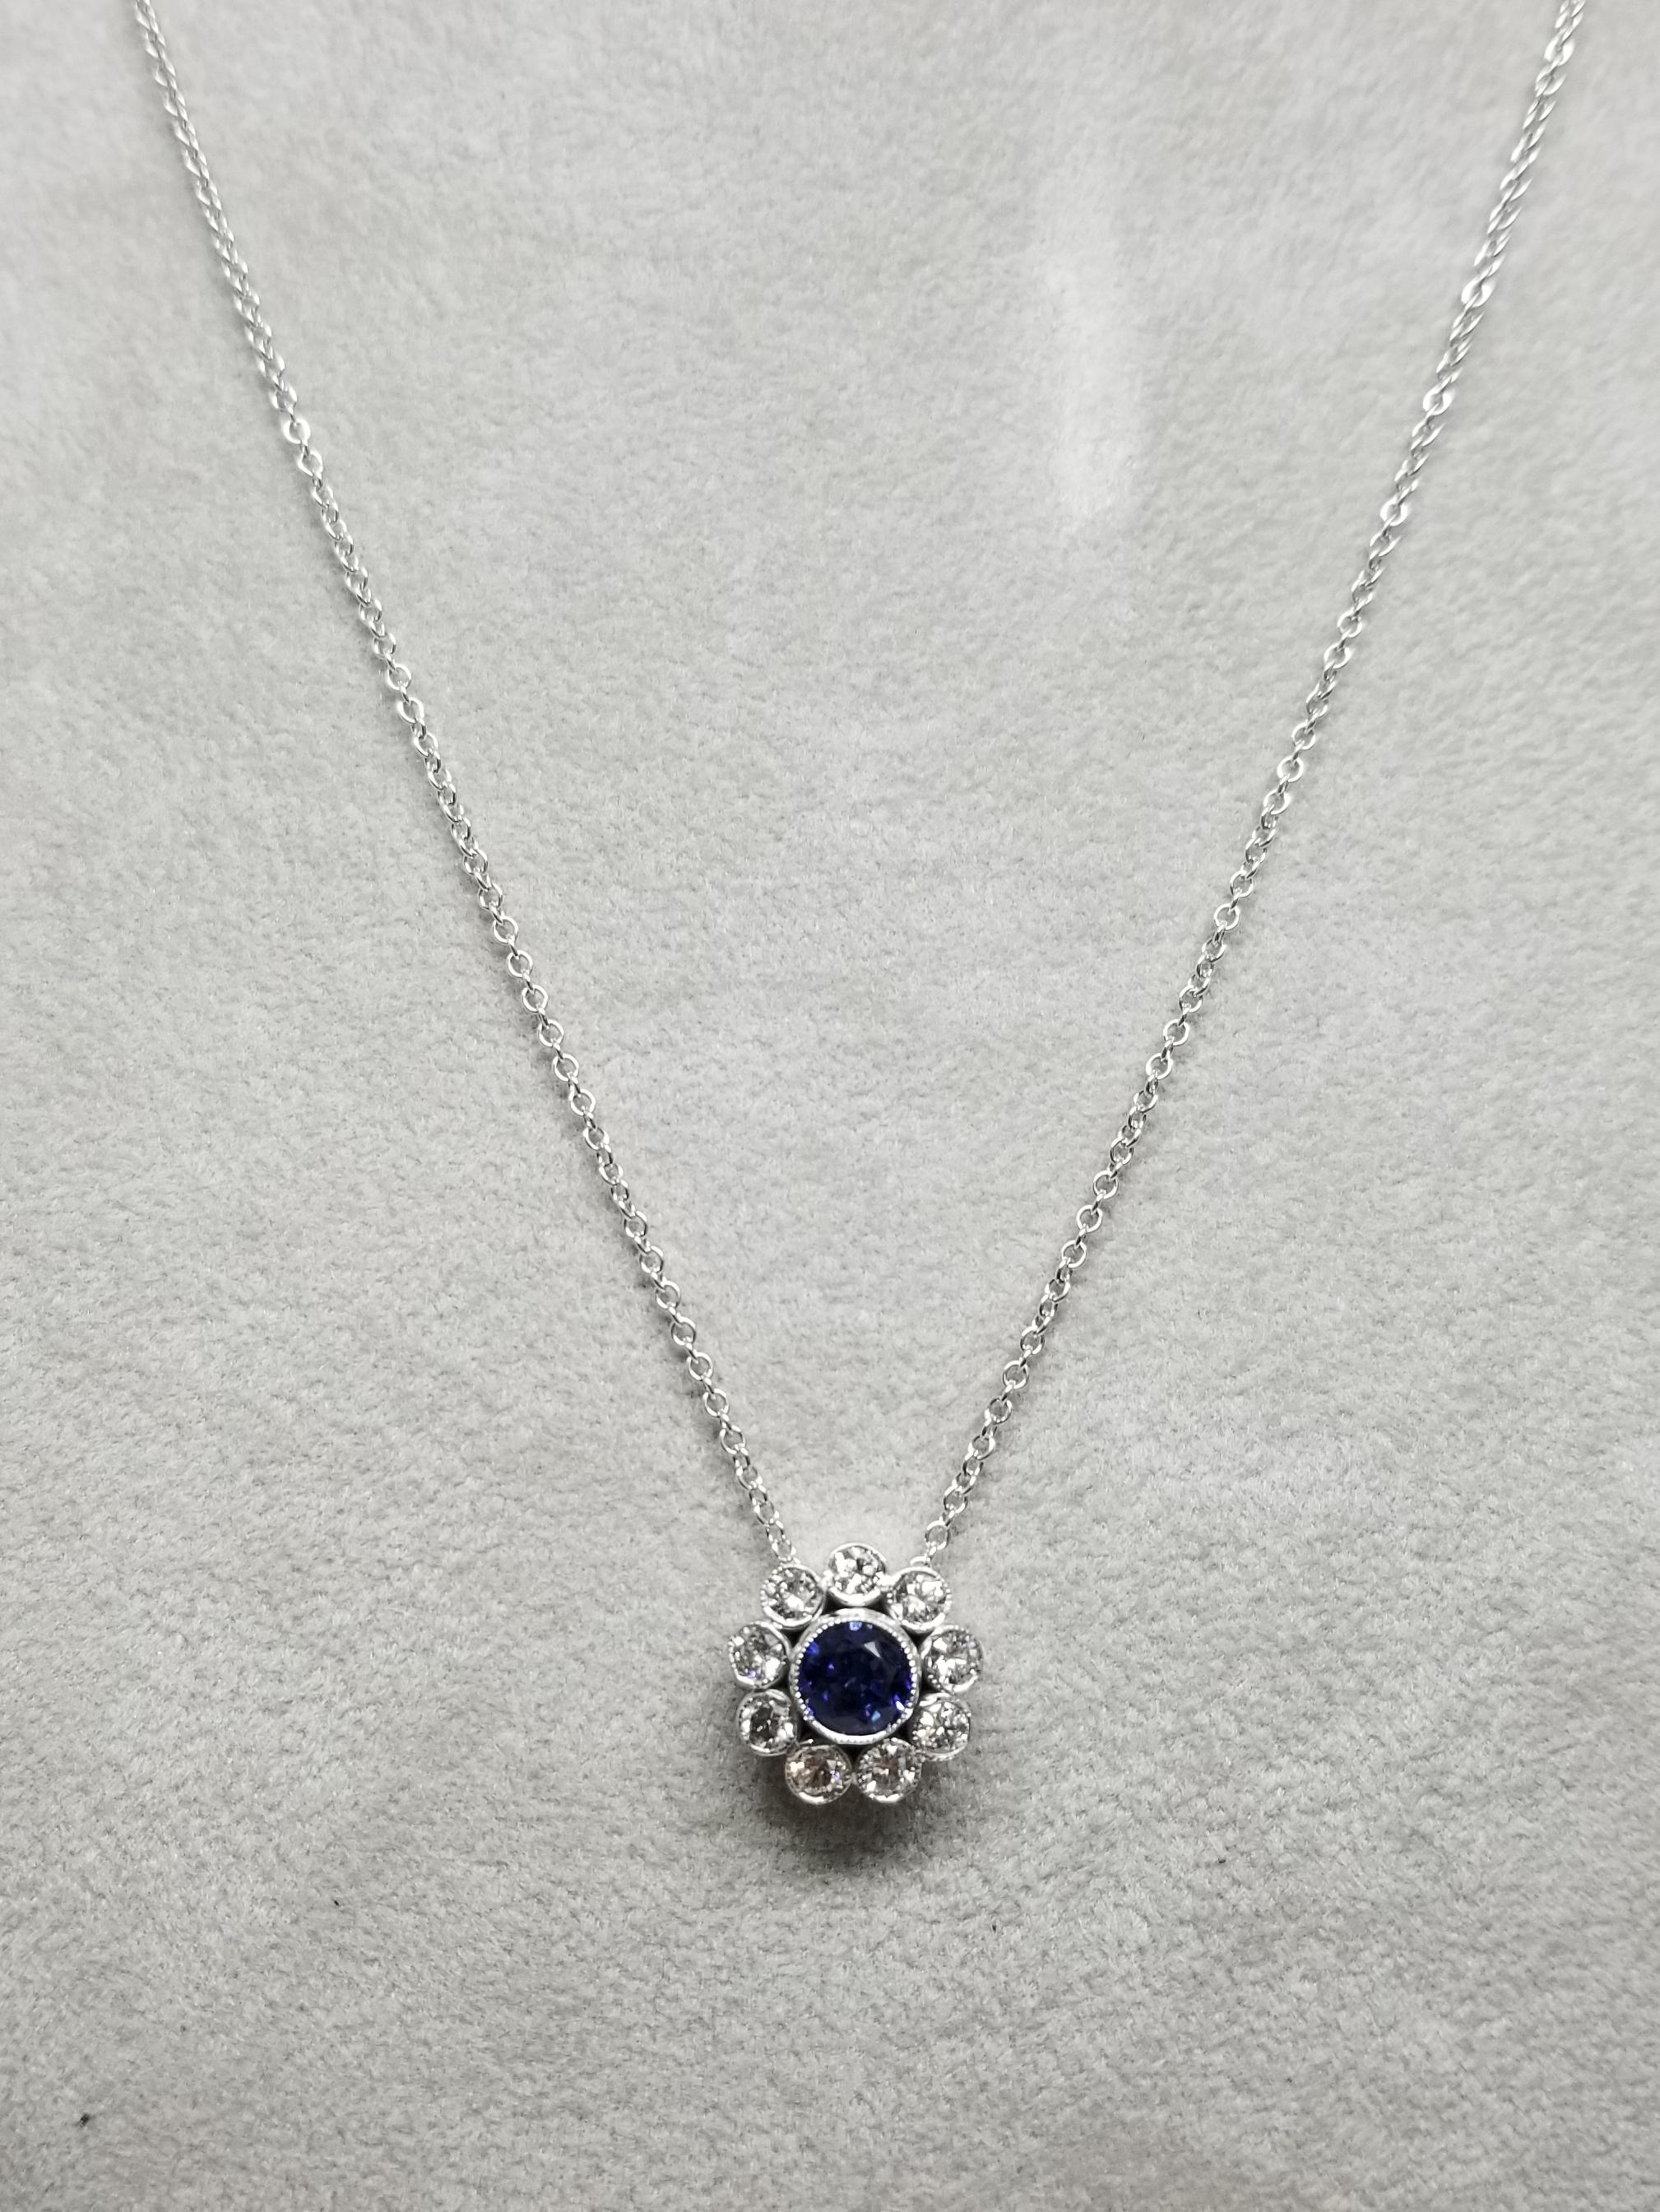 pendentif halo en 14 carats Saphir et diamant, contenant 1 saphir bleu rond de qualité gemme pesant 1.11cts. et 9 diamants ronds pleine taille de très belle qualité pesant .80pts.